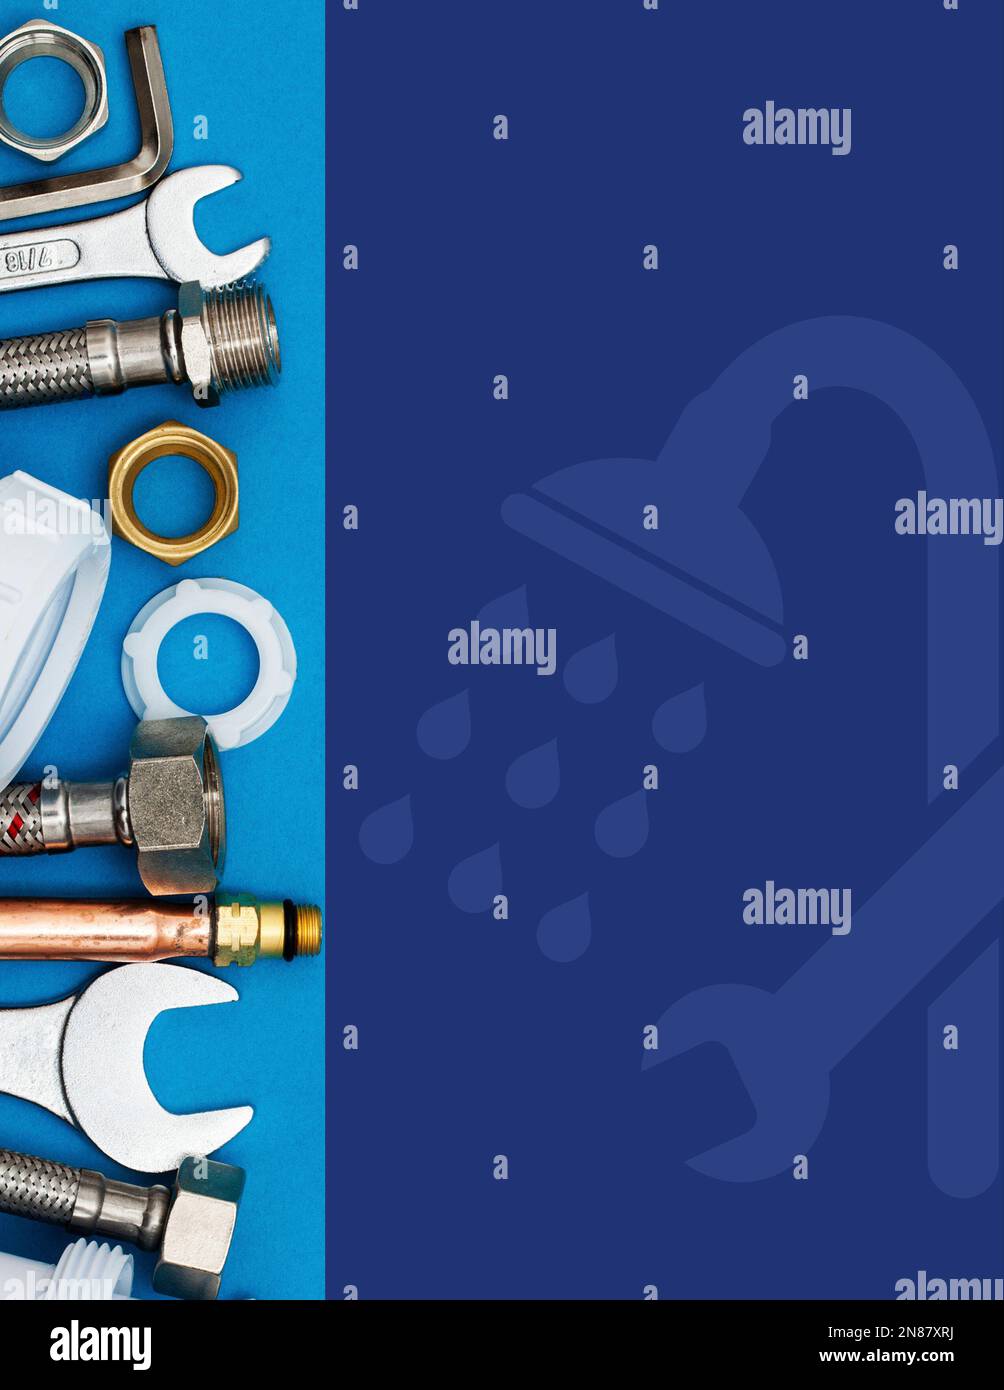 Abbildung der Sanitärwerkzeuge mit leerem Bereich auf der rechten Seite, wo Sie Bilder oder Texte einfügen können. Stockfoto